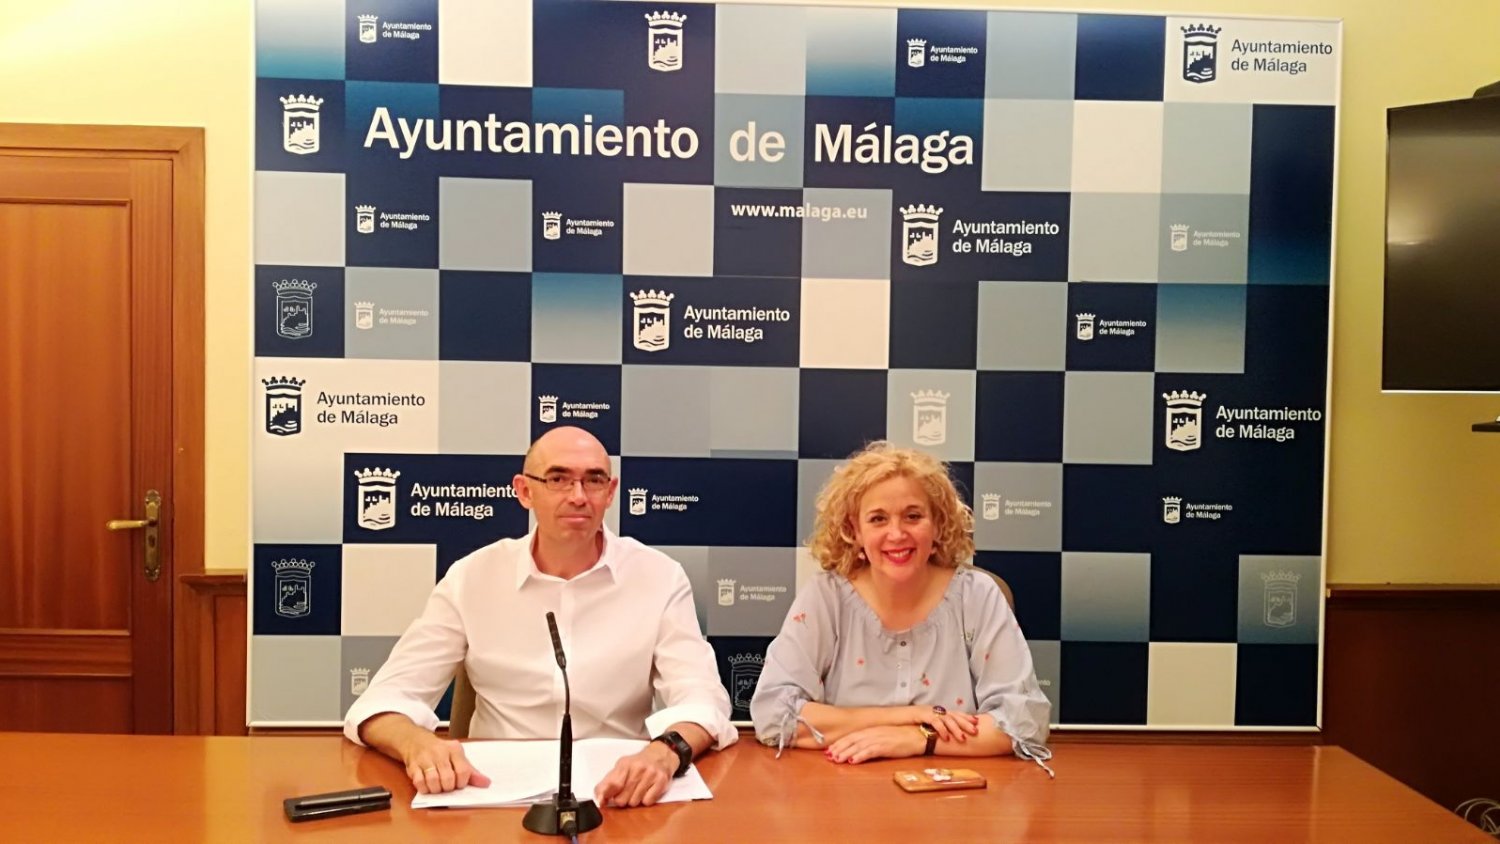 Málaga Para la Gente acusa al PP de mantener sin solución el caos de la Gerencia de Urbanismo